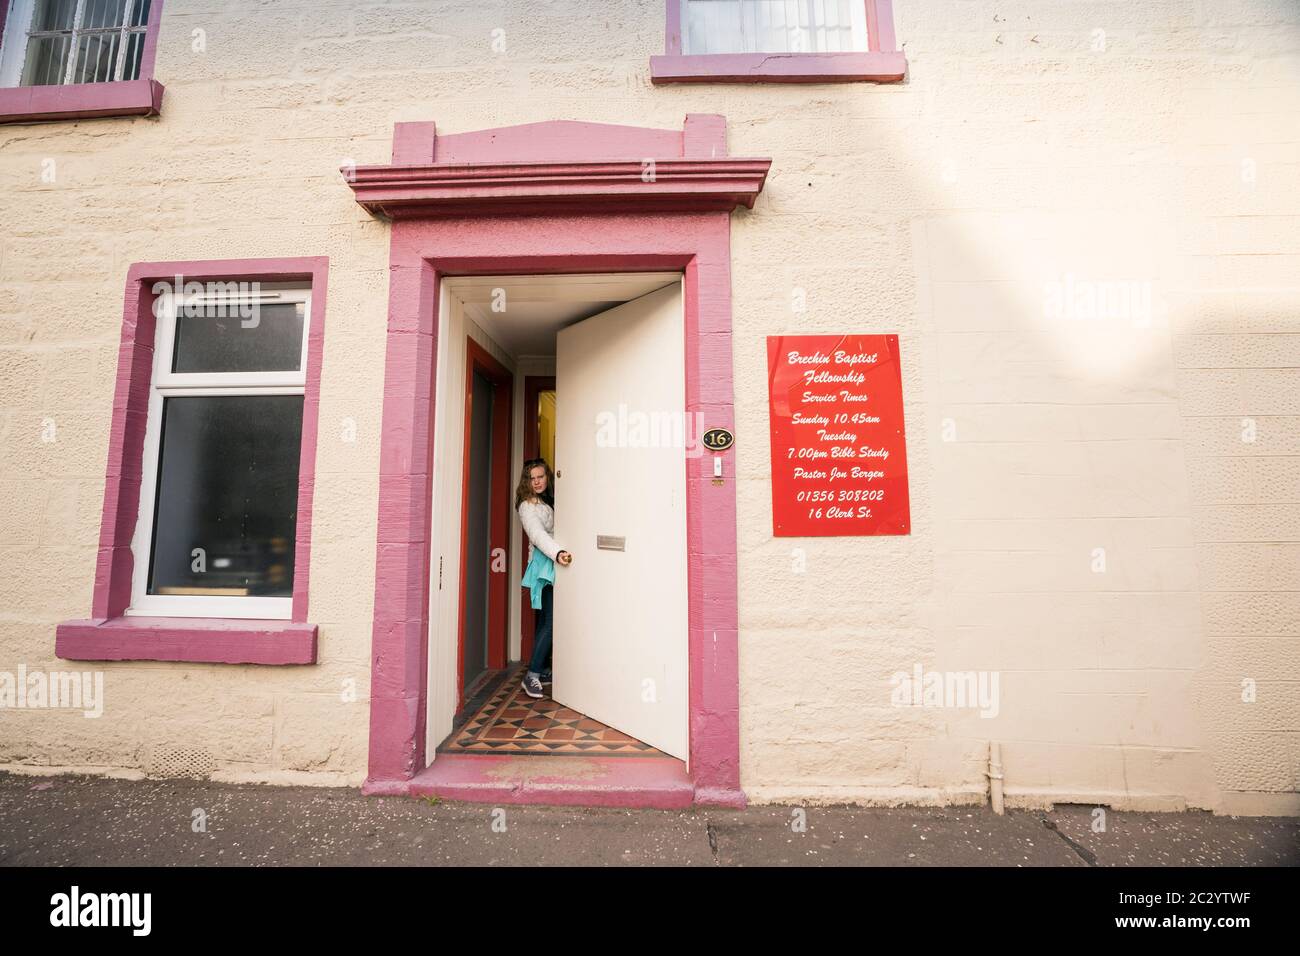 Una mujer en jeans abre la puerta a una iglesia Bautista ubicada dentro del edificio que una vez sirvió como una taberna local en la pequeña ciudad de Brechin, Escocia Foto de stock